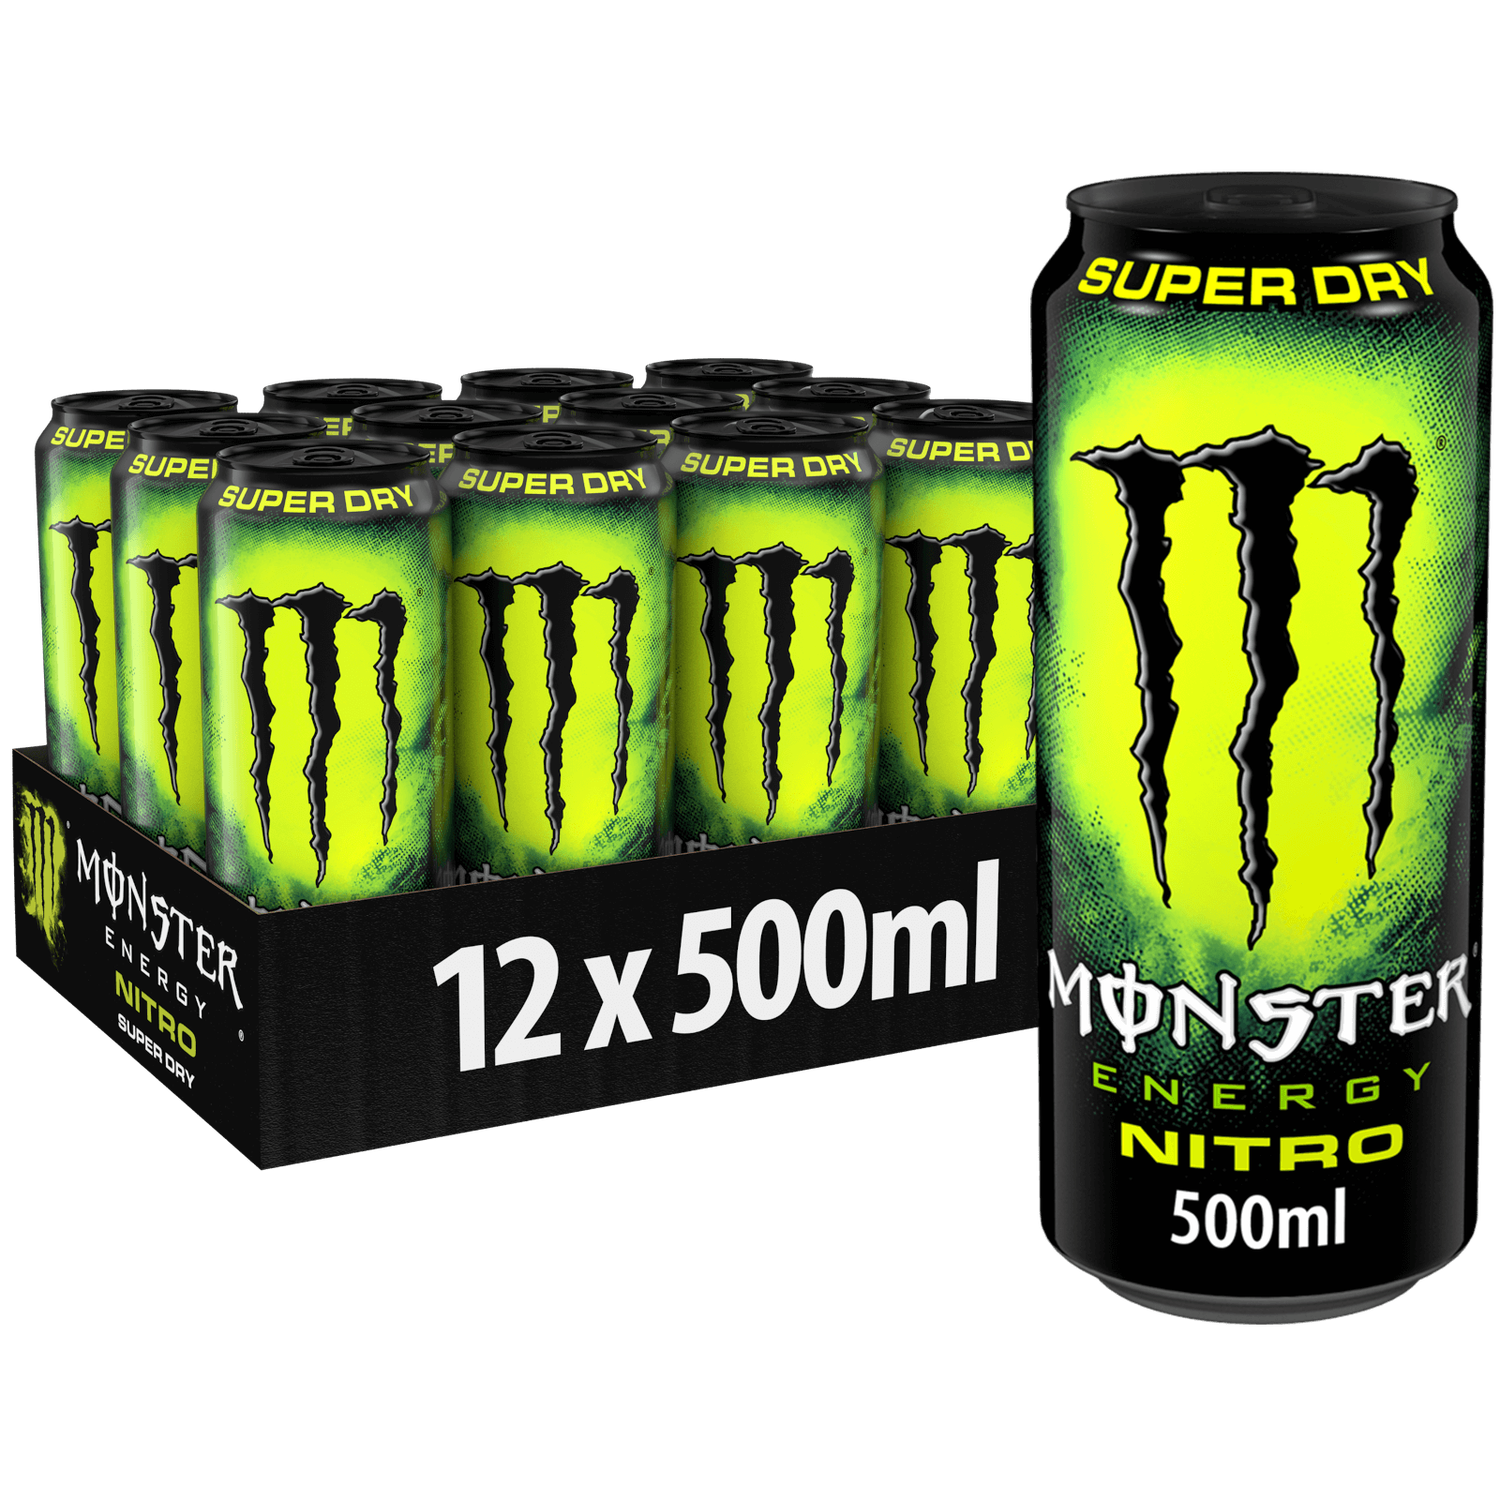 Monster Energy Drink Nitro Superdry - 500ml - Case of 12